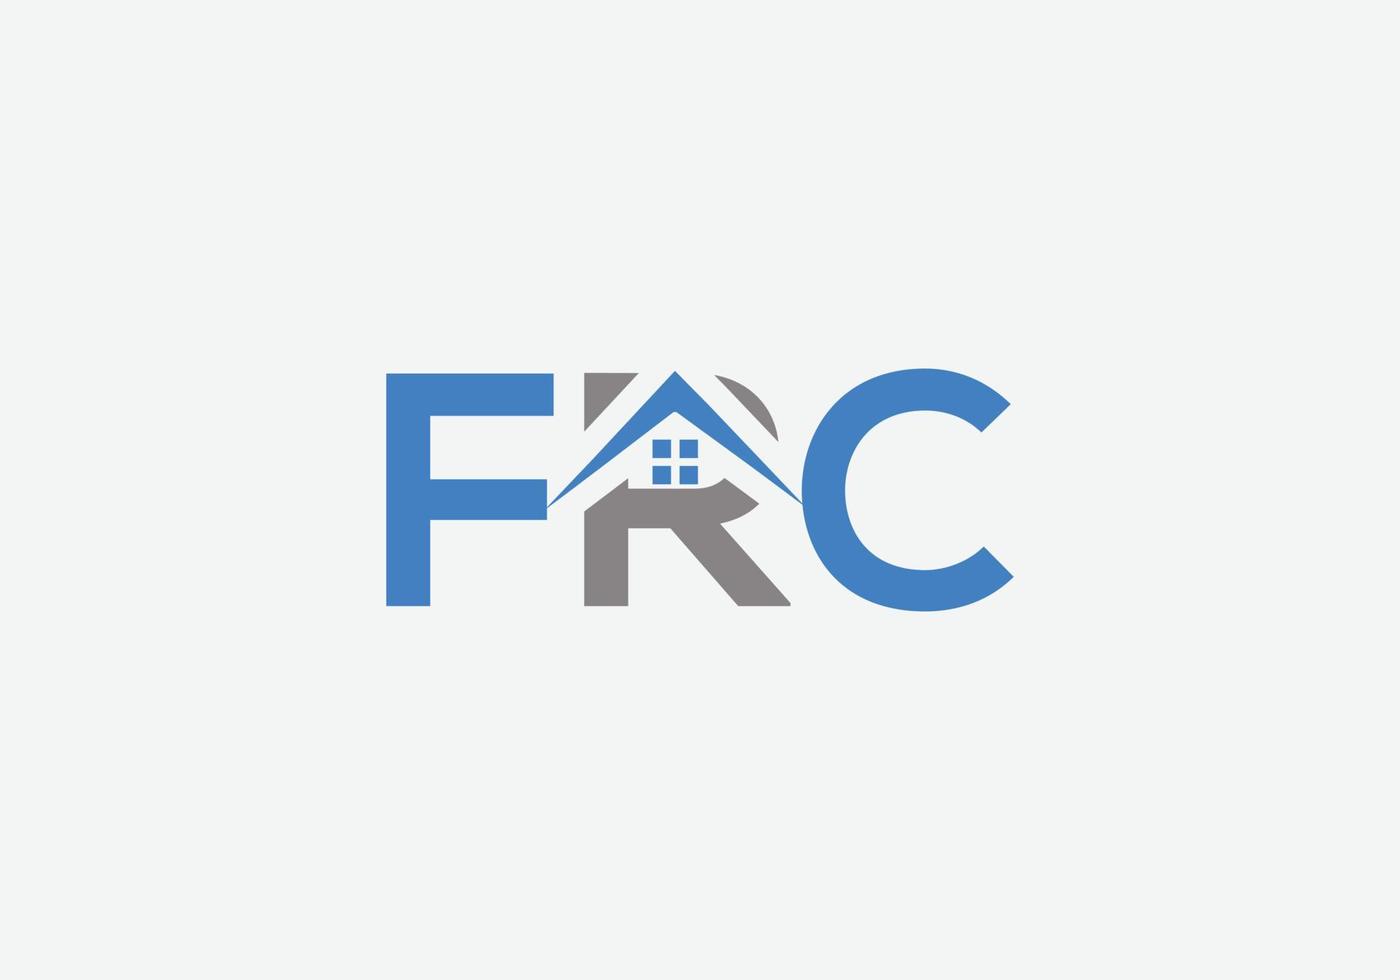 diseño de logotipo de bienes raíces inicial moderno de letra frc abstracta vector